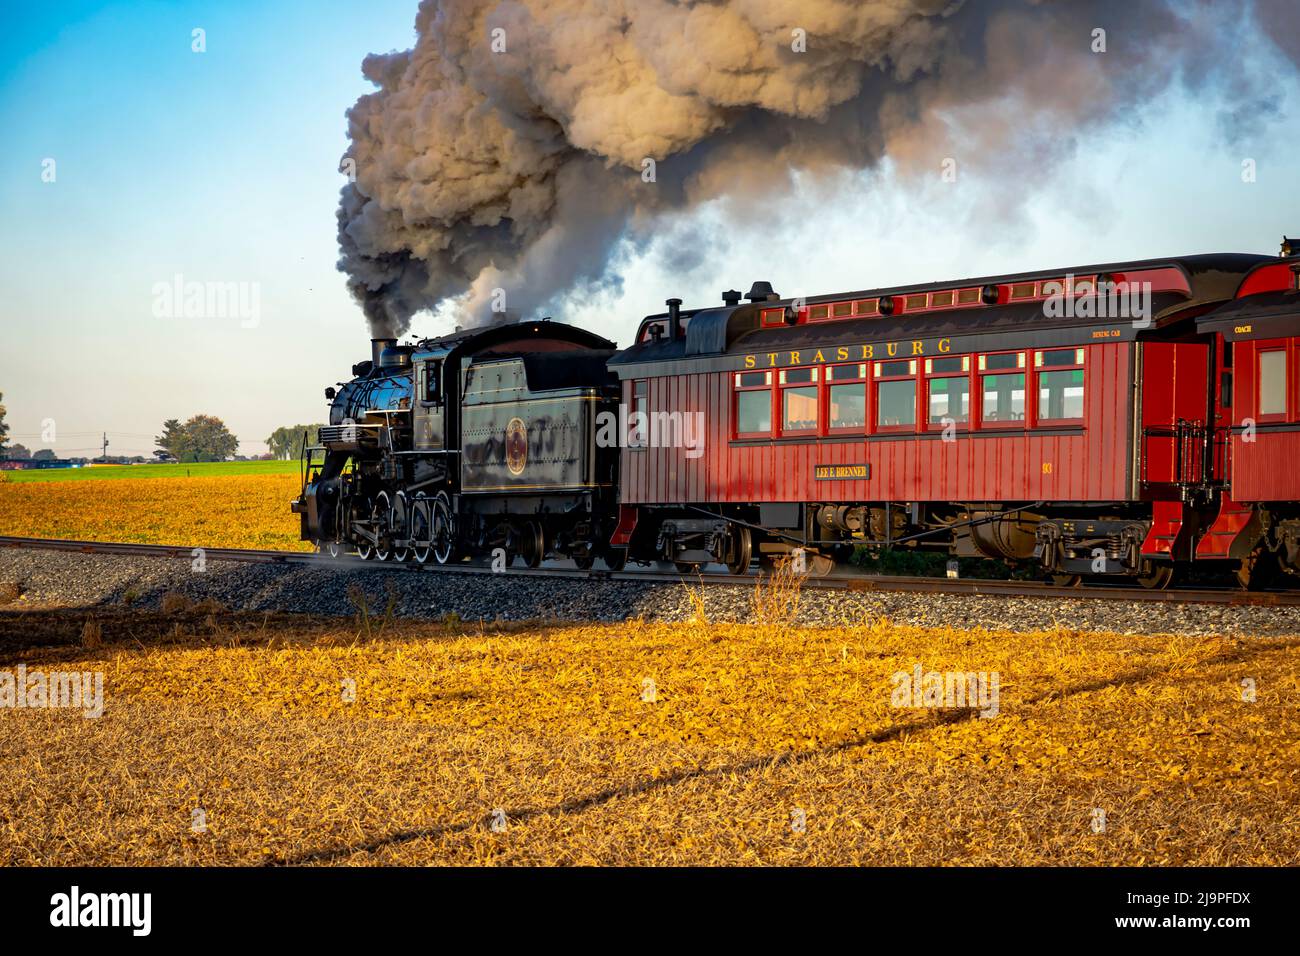 Ronks, Pennsylvanie, octobre 2020 - Un billet de voyage pour un train à vapeur de passagers antique à lever du soleil lors d'une belle journée partiellement nuageux Banque D'Images